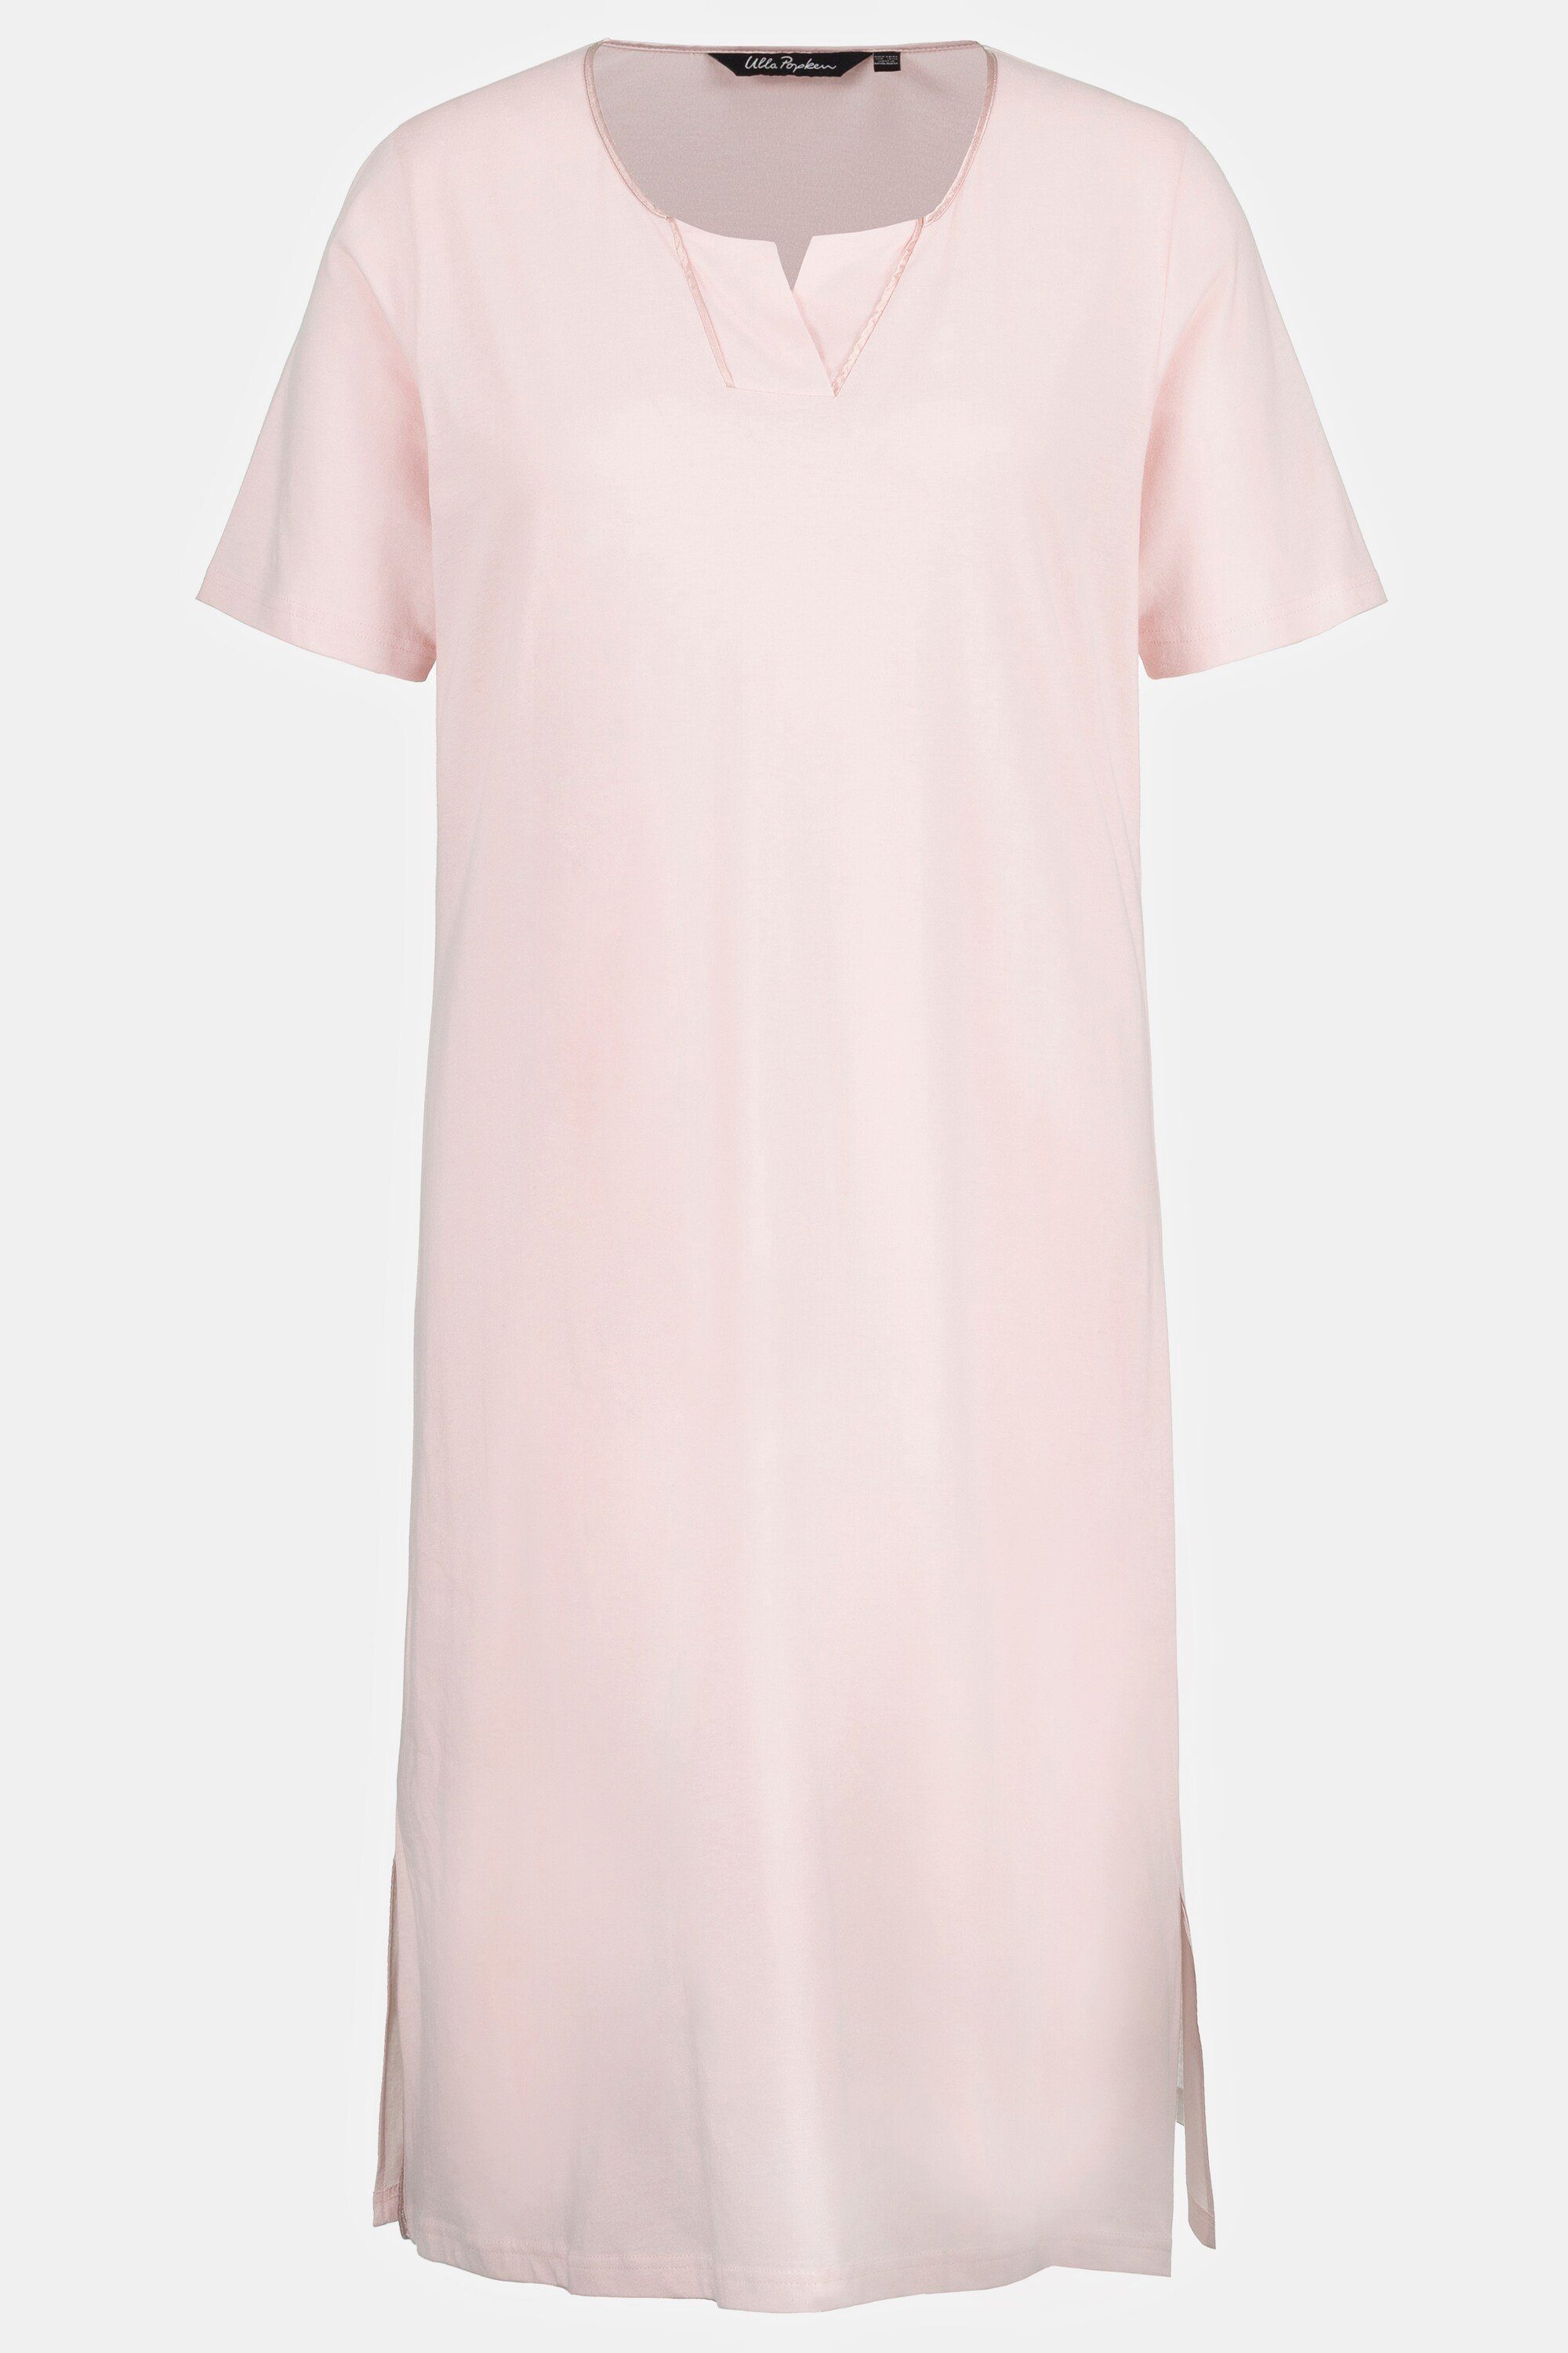 Nachthemd rosa Halbarm Popken Satinpaspel Ulla Nachthemd Tunika-Ausschnitt blasses